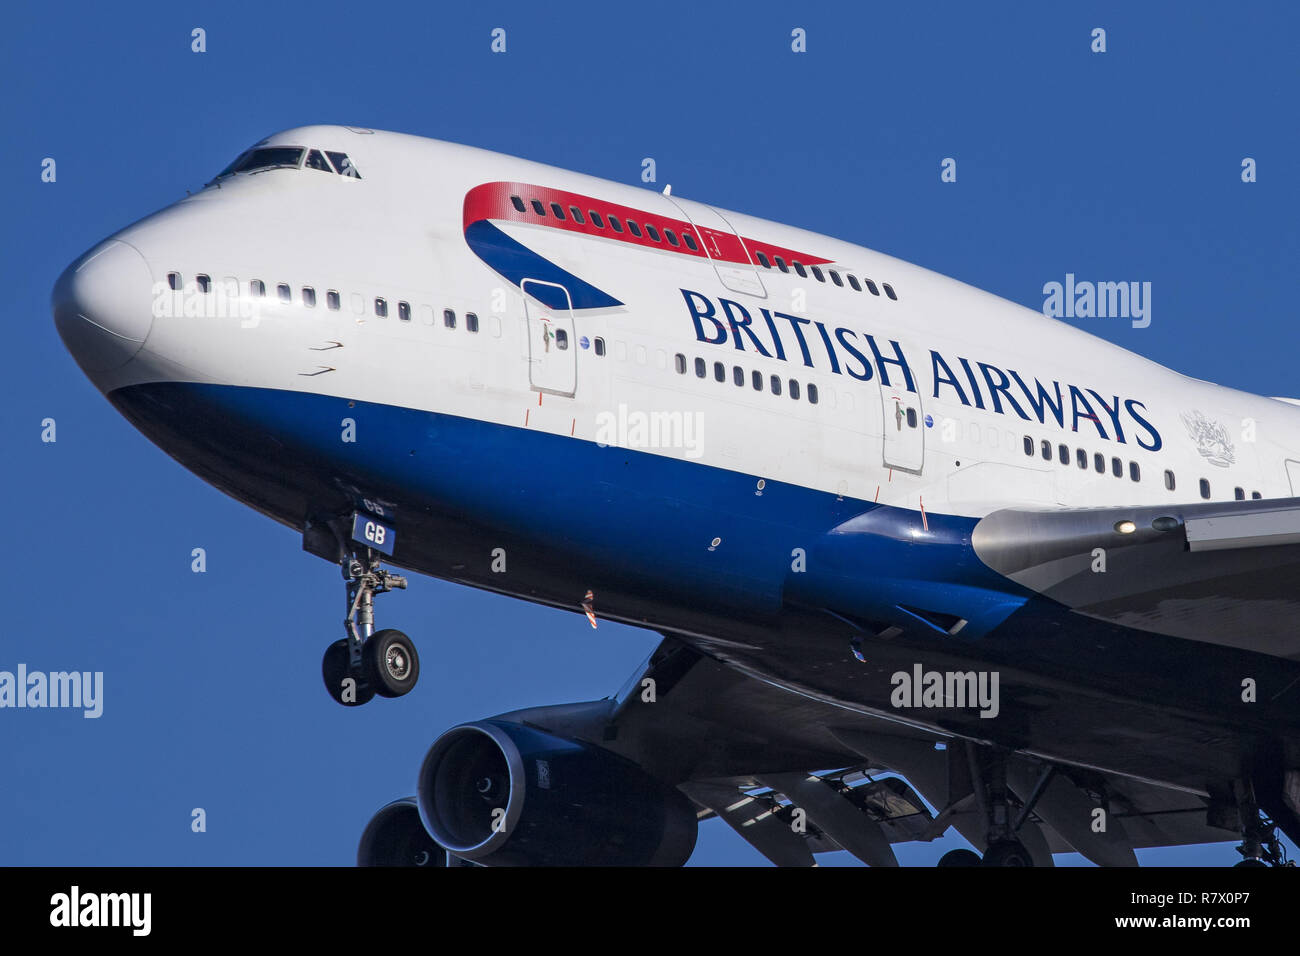 Regno Unito. 30 Novembre, 2018. British Airways Boeing 747 Jumbo Jet visto lo sbarco presso il London Heathrow Airport LHR/EGLL in Inghilterra.Il velivolo è un Boeing 747-400 con registrazione G-BYGB, è equipaggiato con 4 RR RB.211 motori e i suoi battenti dal gennaio 1999. British Airways opera 35 Boeing 747 tipo di velivolo, tutti verrà ritirato dal 2024. BA o BAW è un membro di oneworld alleanza aerea. Credito: Nicolas Economou SOPA/images/ZUMA filo/Alamy Live News Foto Stock